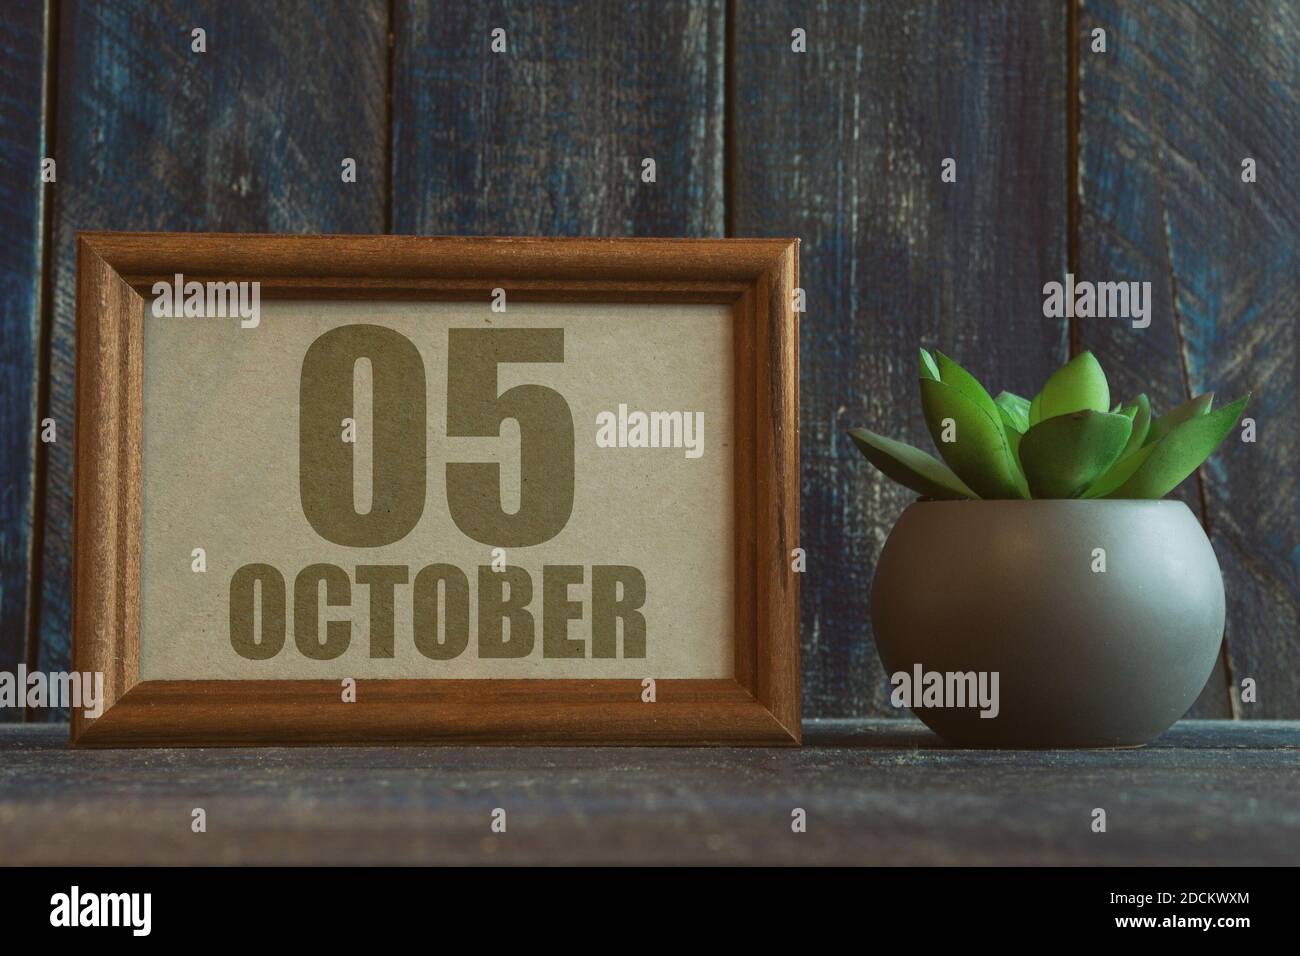 oktober. Tag 5 des Monats, Datum im Rahmen neben Sukkulente auf Holzhintergrund Herbstmonat, Tag des Jahres Konzept Stockfoto